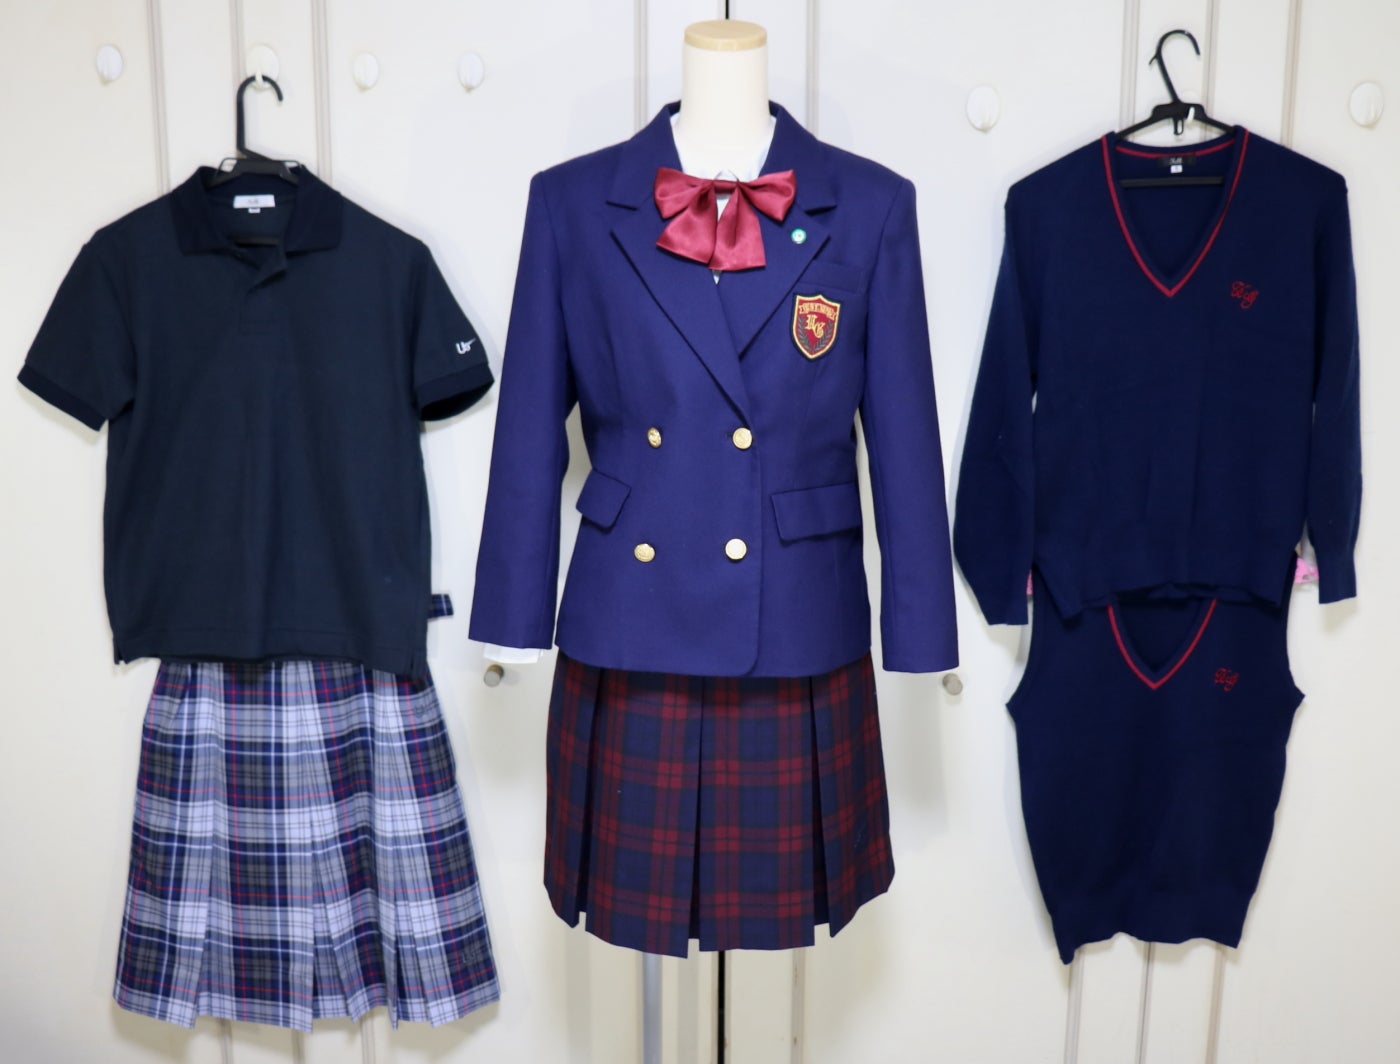 埼玉県さいたま市 浦和学院高等学校校章付 女子ブレザー制服のご紹介 